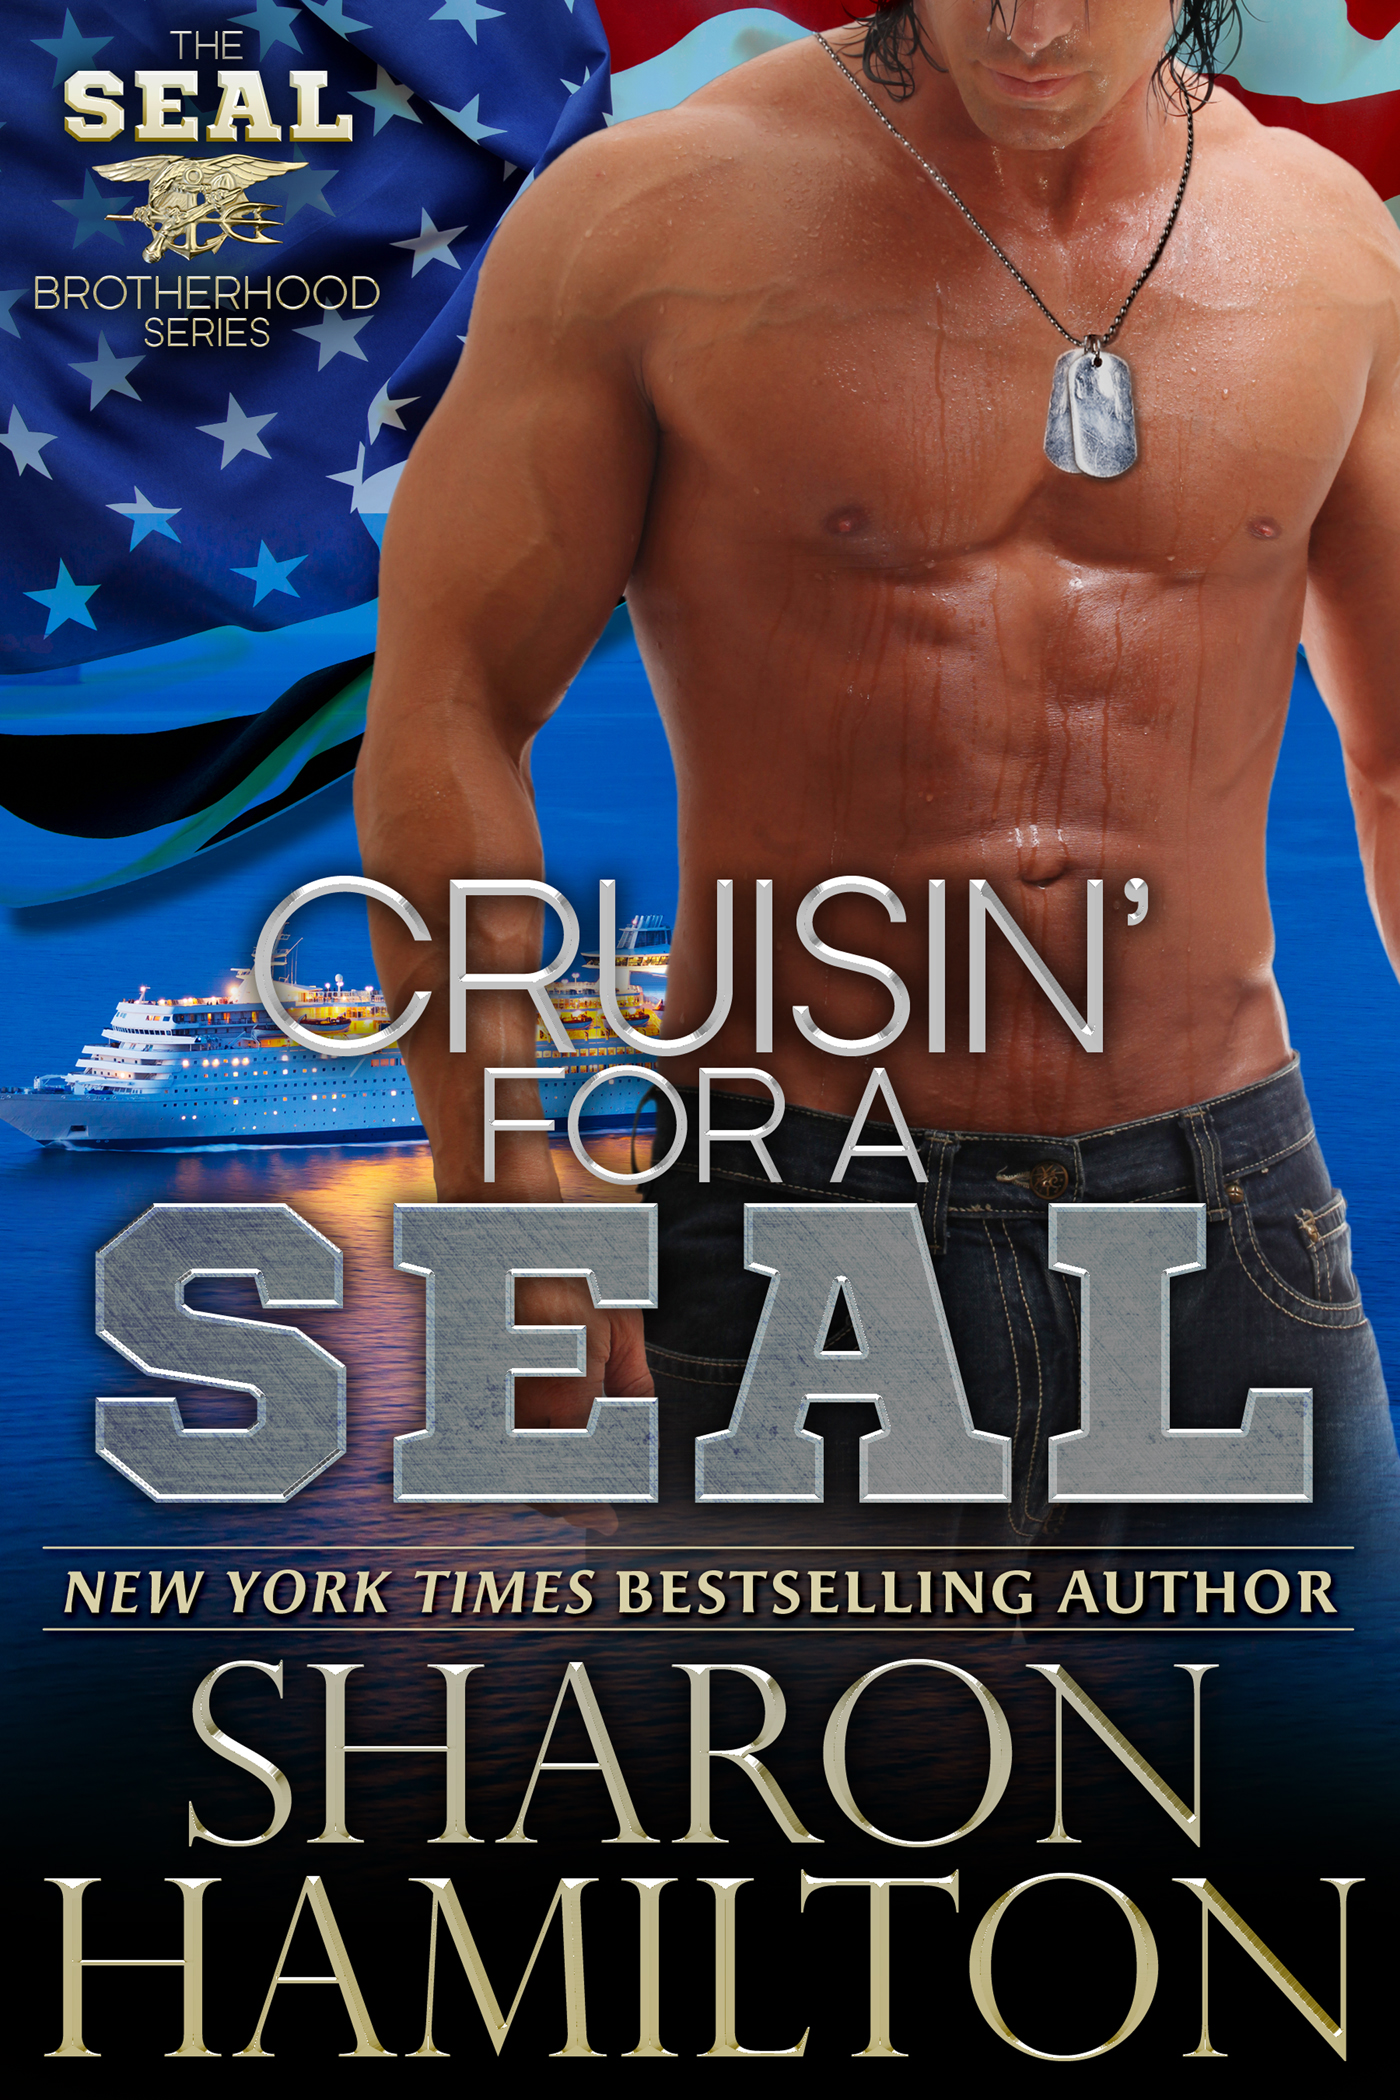 Cruisin' for a SEAL a Book by Author Sharon Hamilton